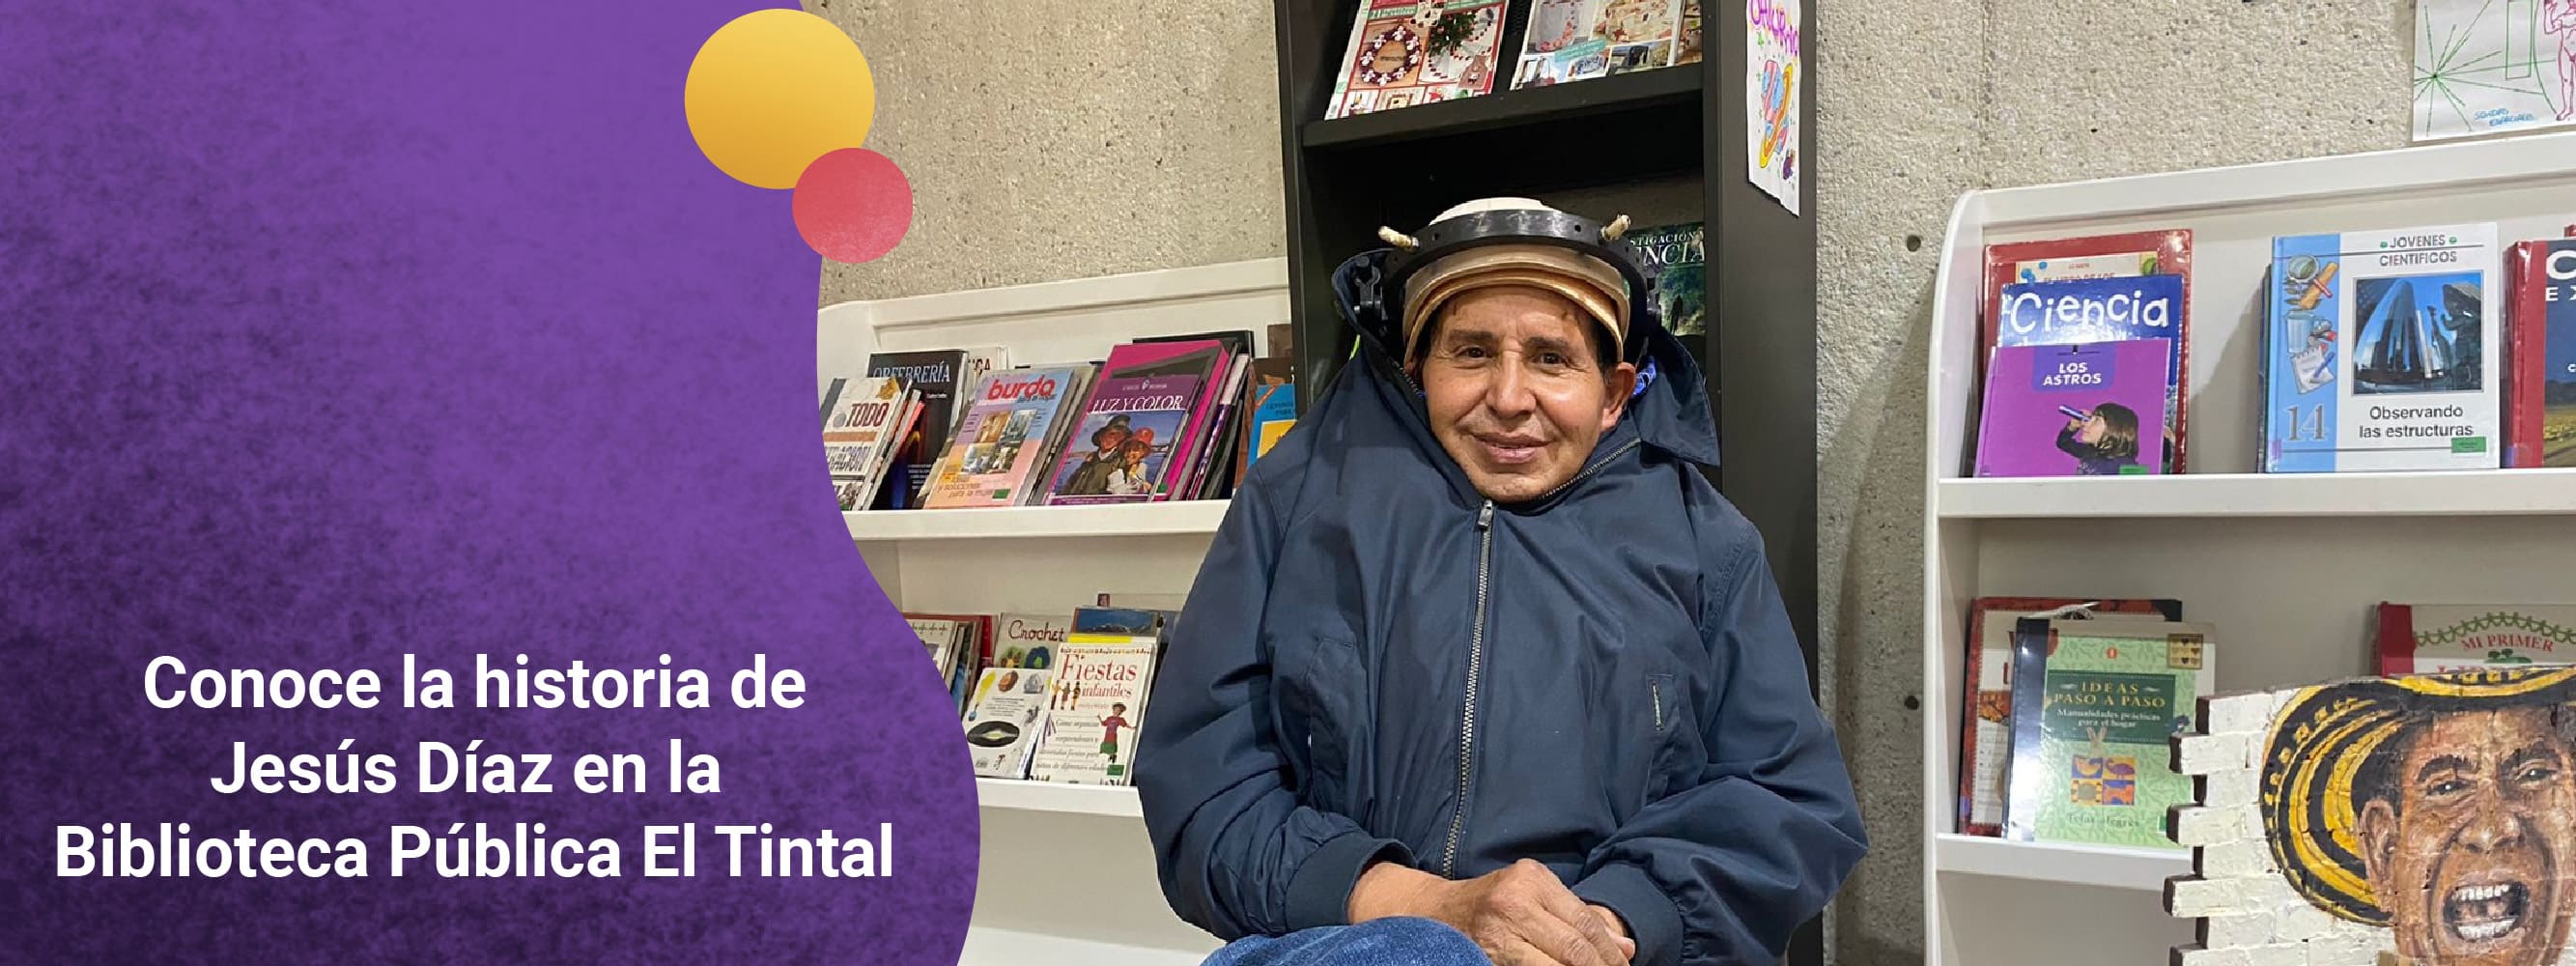 Biblioteca Pública Manuel Zapata Olivella El Tintal el talento, la lectura y el arte son protagonistas